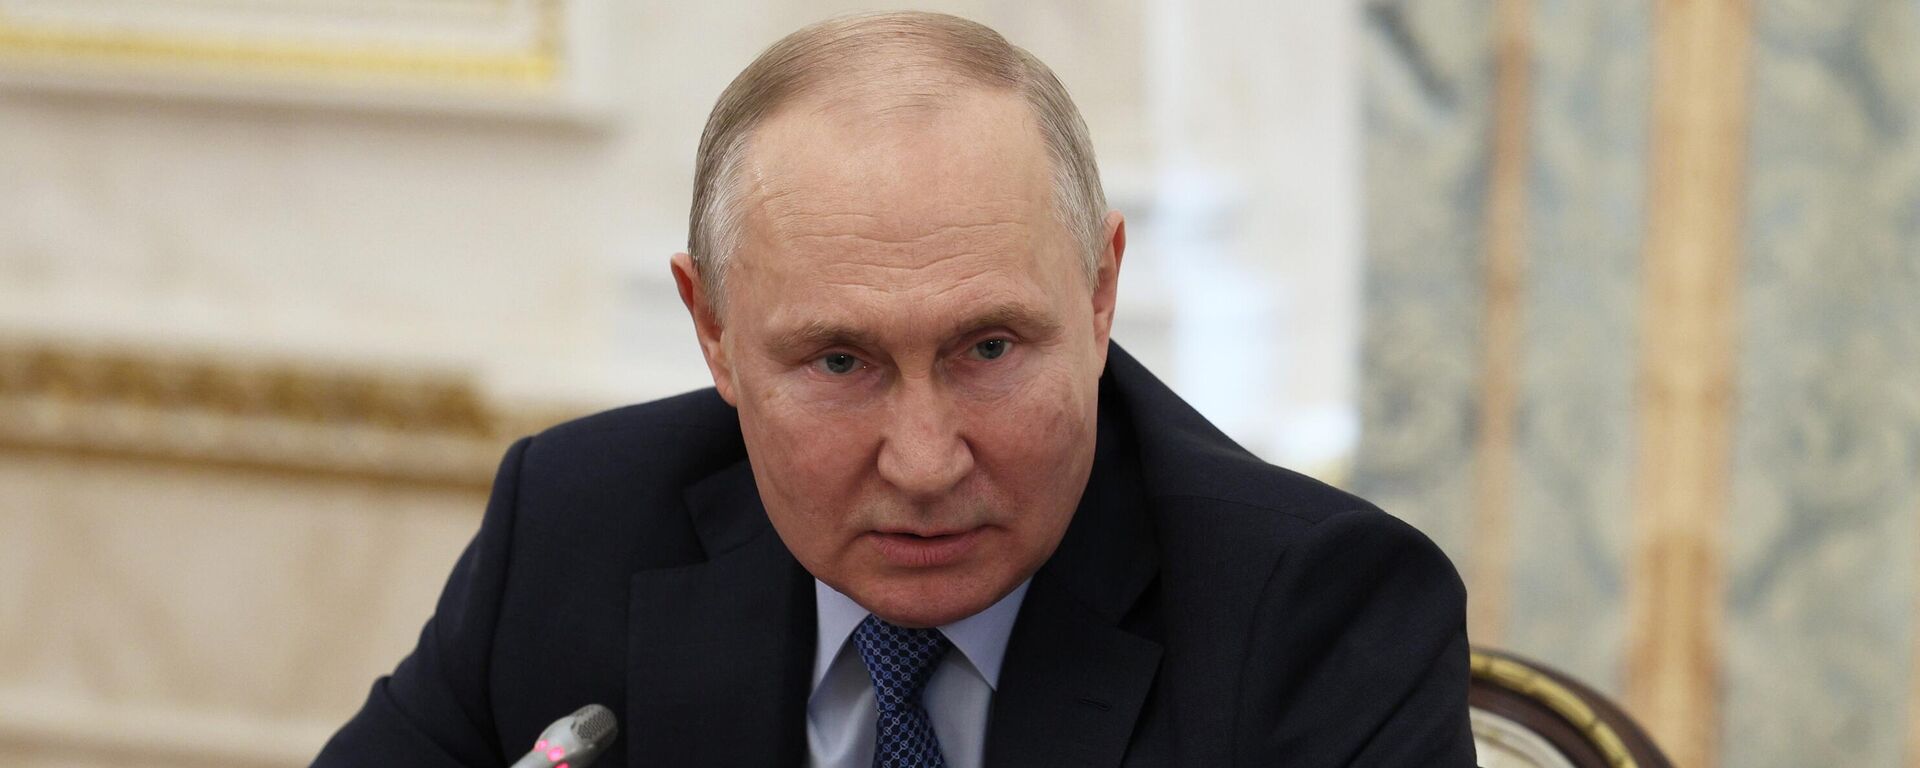  Vladímir Putin, el presidente de Rusia, en un encuentro con periodistas militares, el 13 de junio de 2023  - Sputnik Mundo, 1920, 13.06.2023